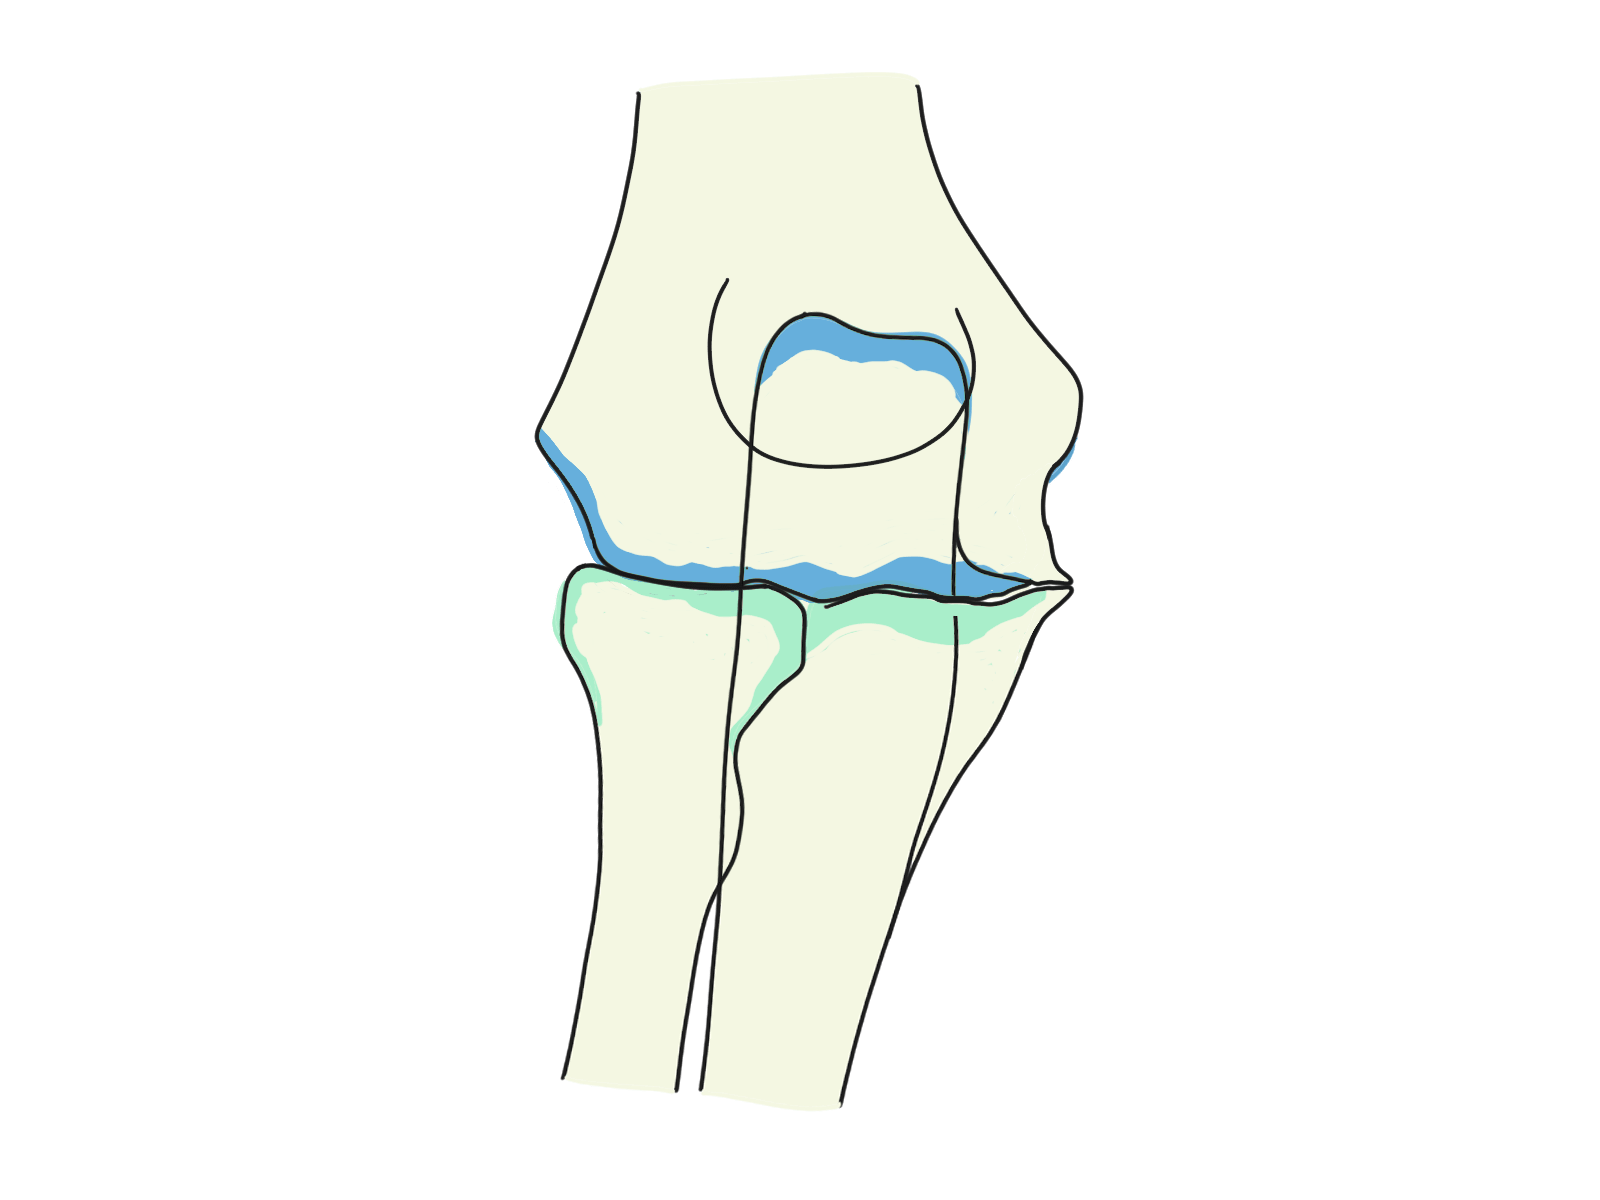 変形性肘関節症についてのイラスト